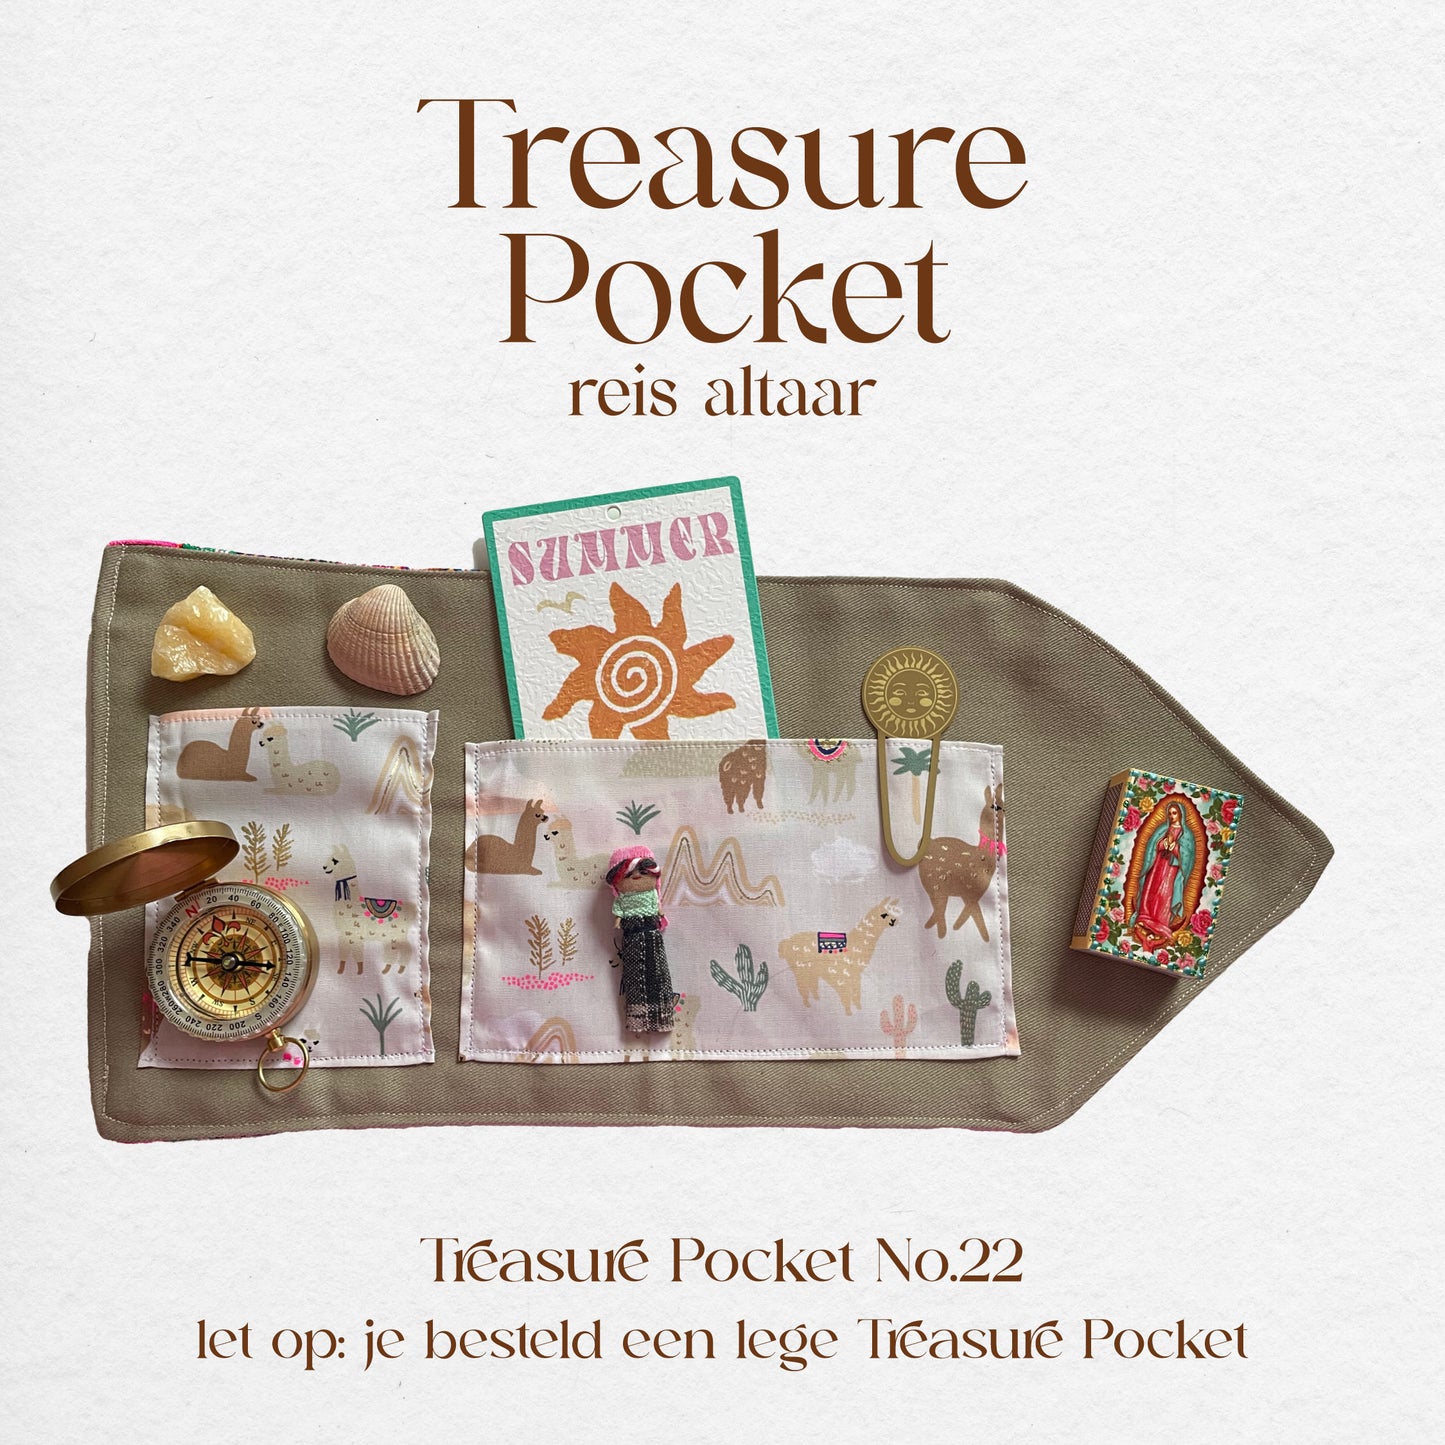 Treasure Pocket No.22